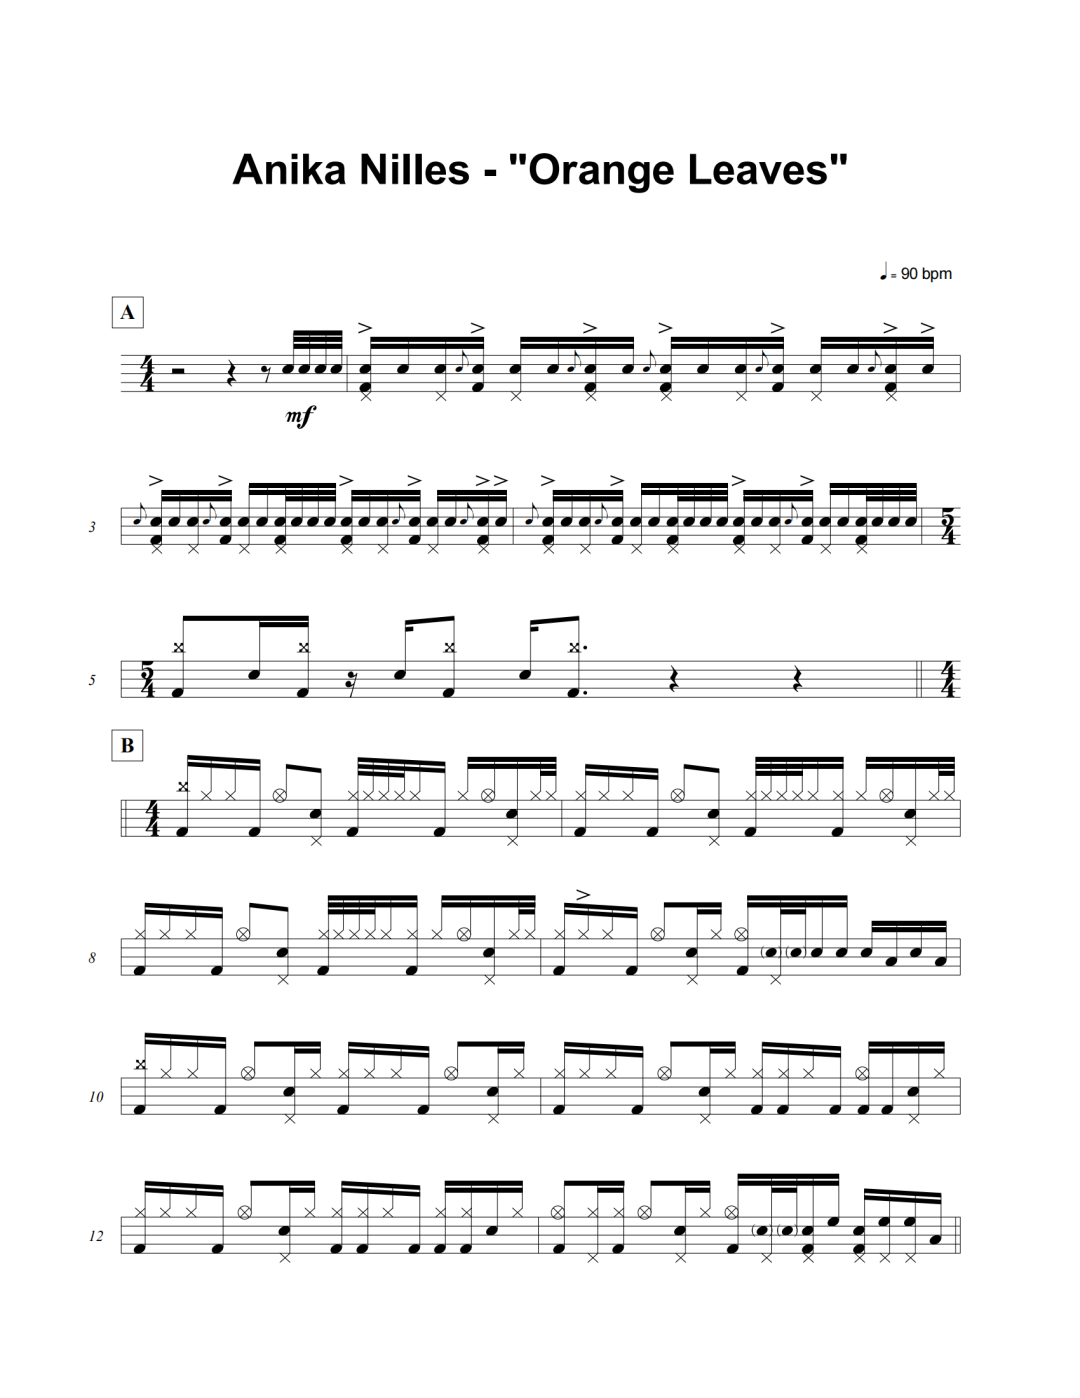 Anika Nille《Orange Leaves》鼓谱 - 架子鼓谱